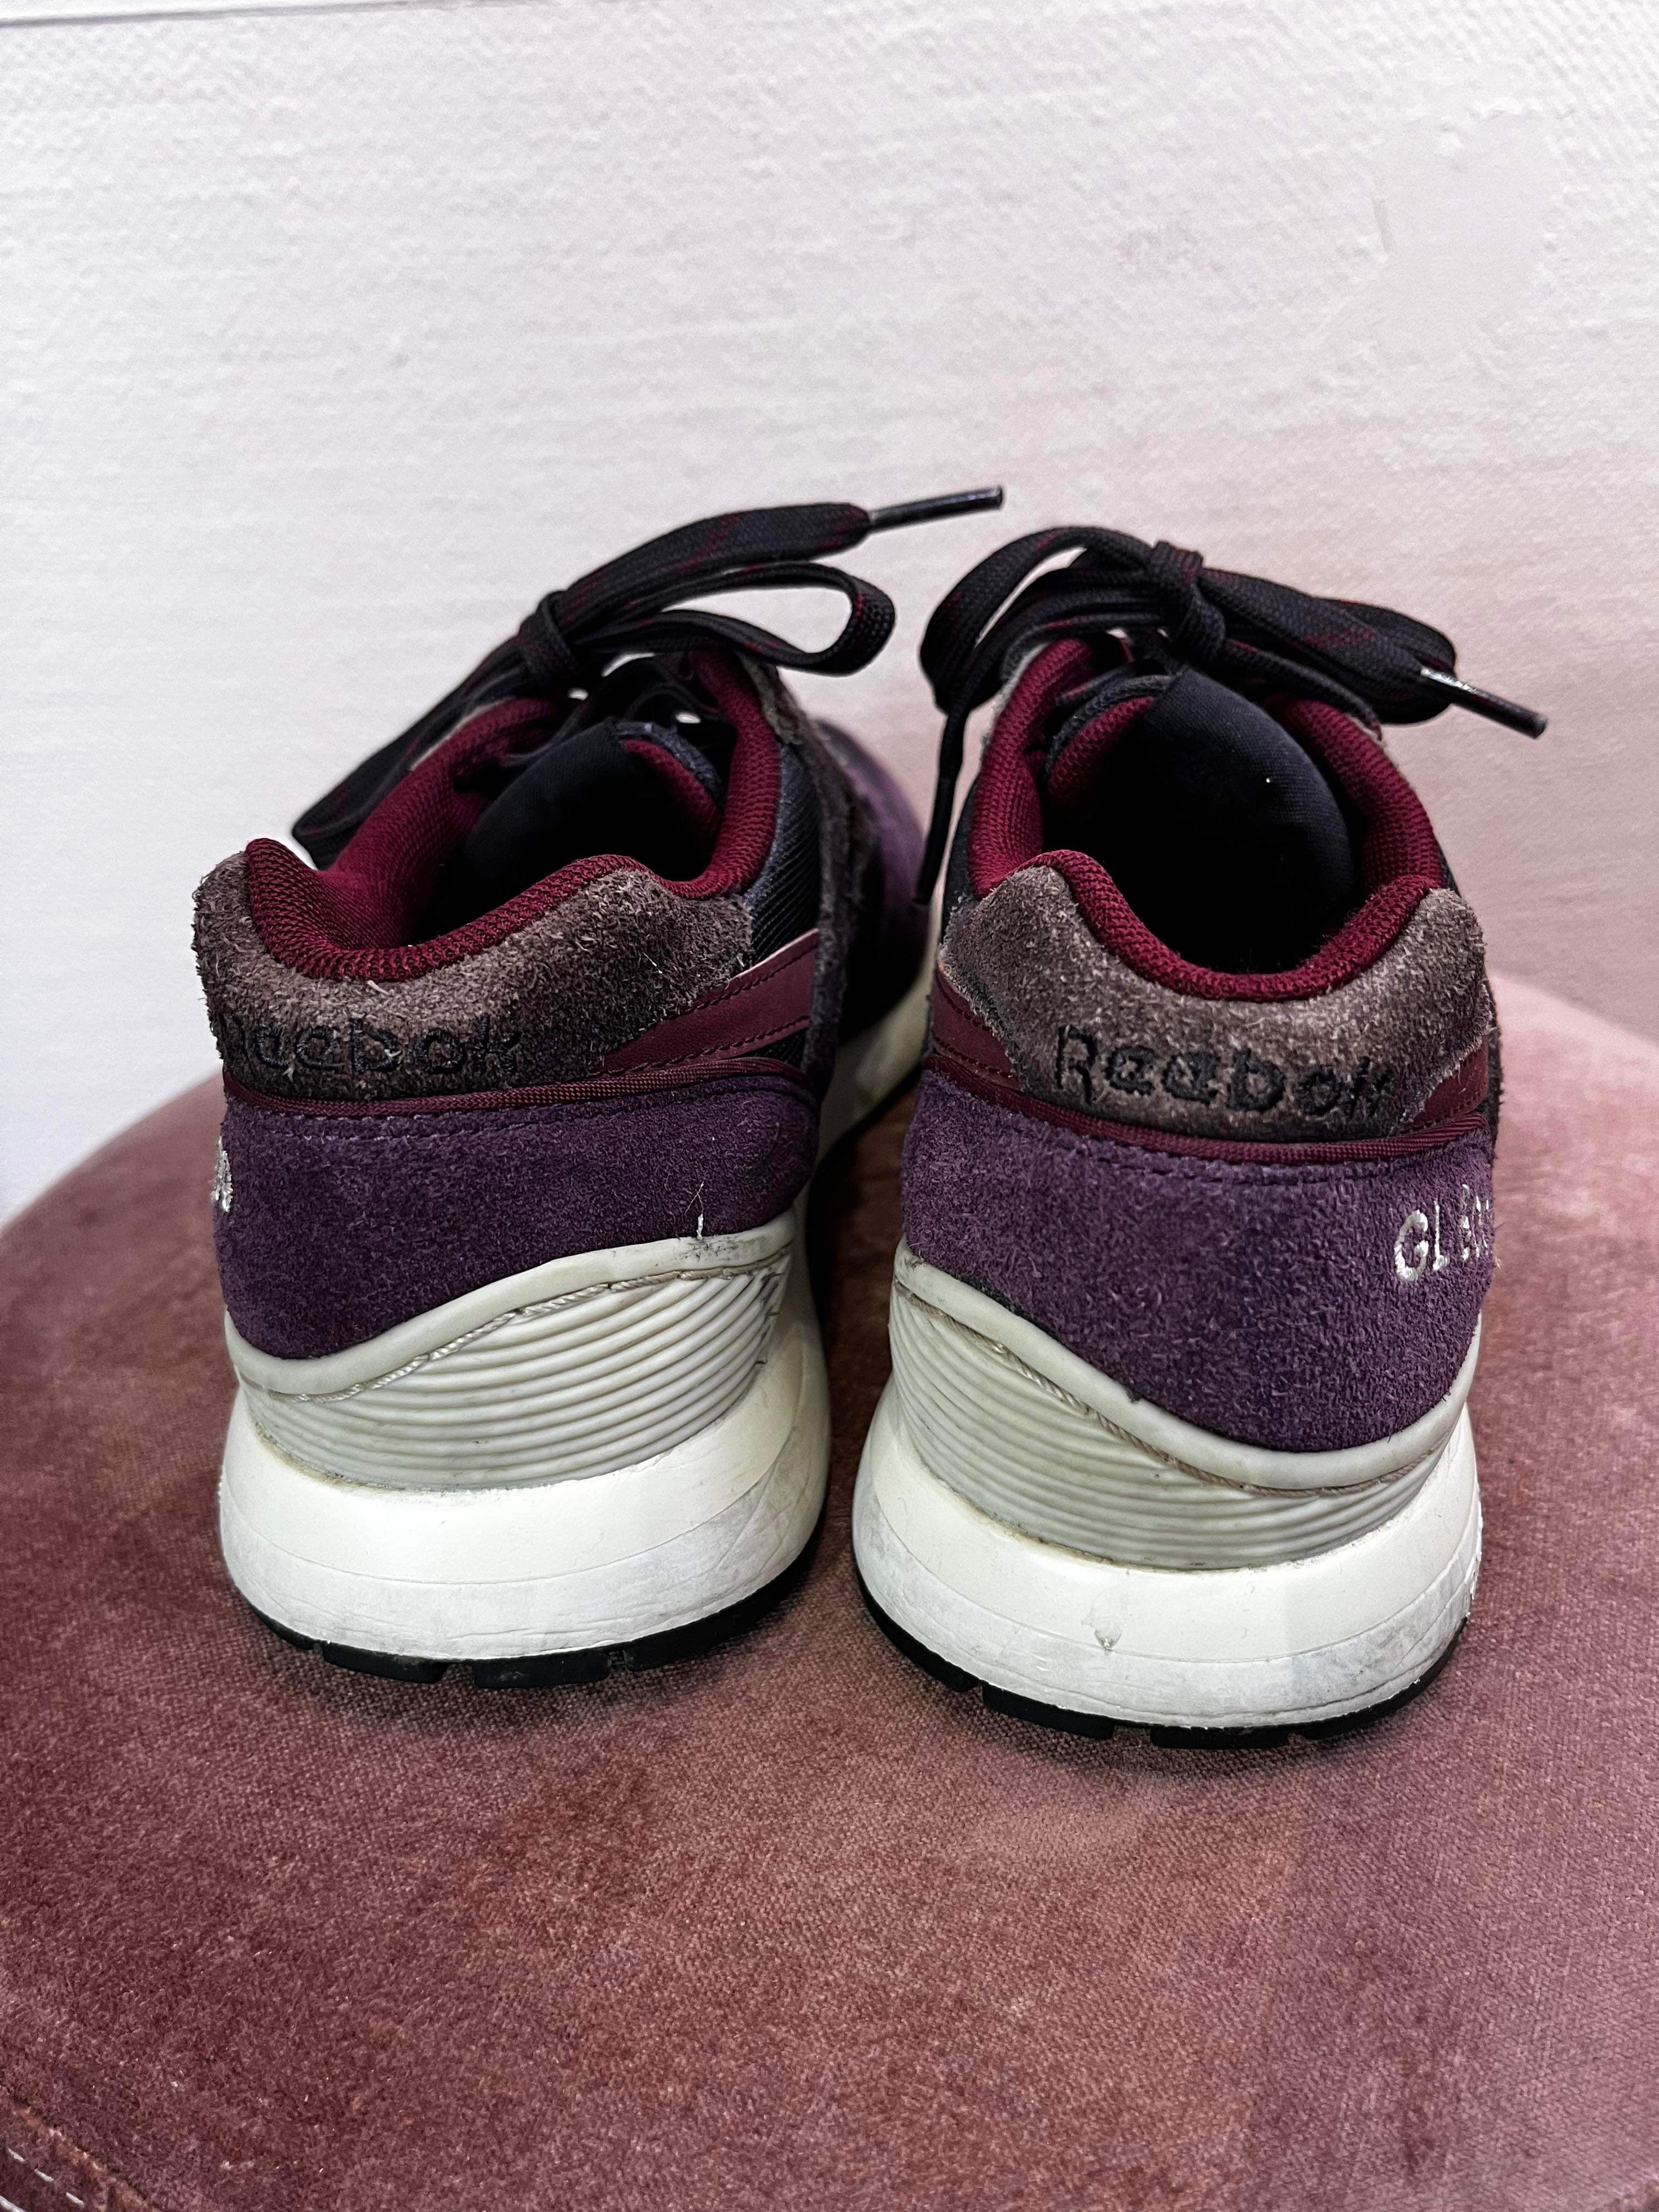 Reebok - Sneakers - Size: 38